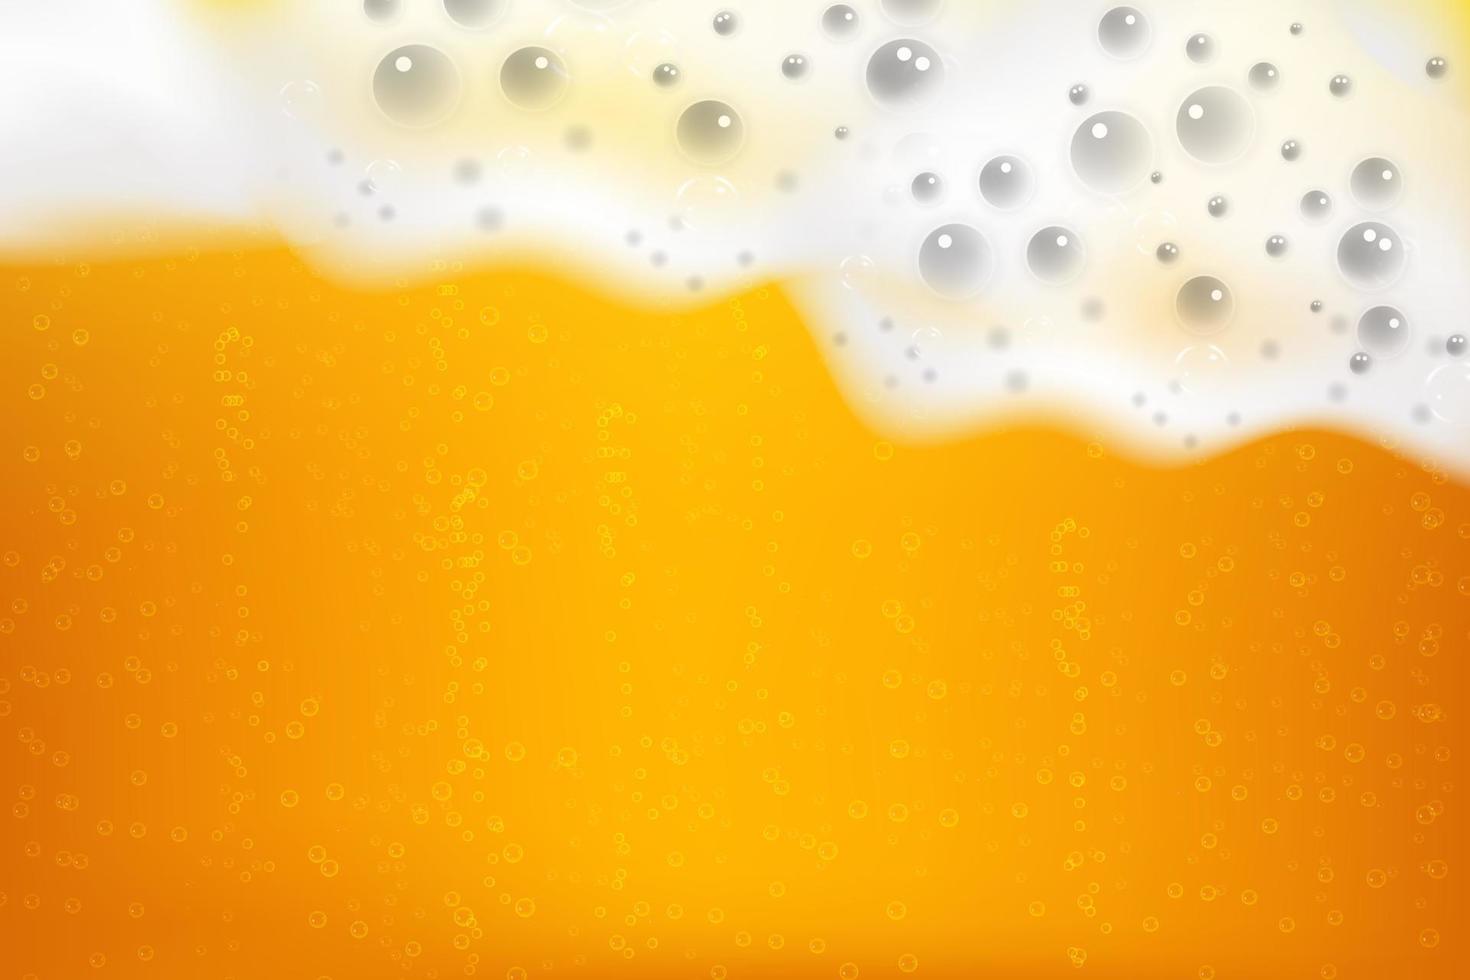 espuma de cerveza fría blanca realista con burbujas, fluyendo por una copa de vidrio. vector